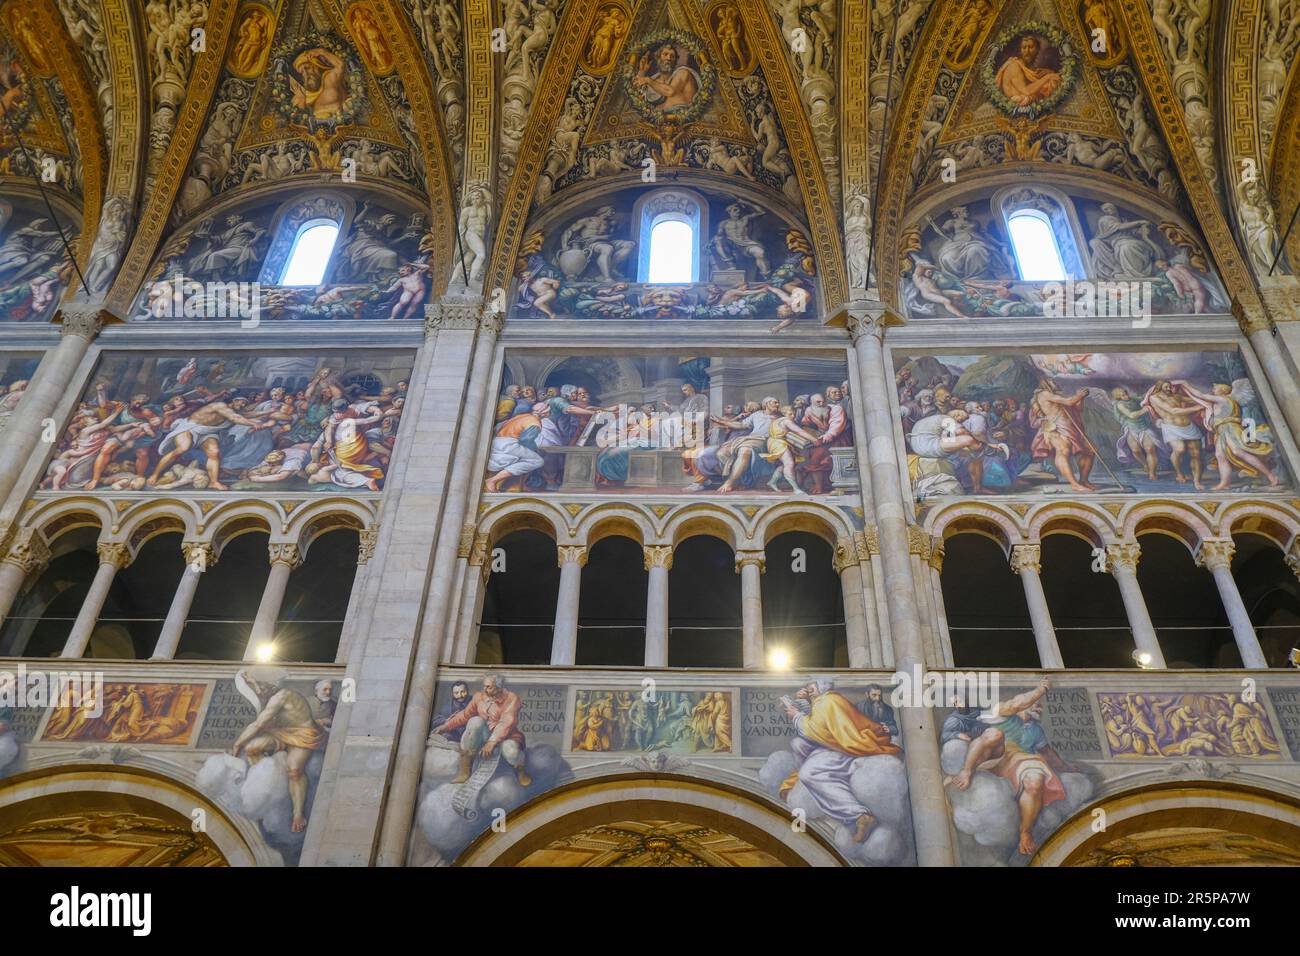 Bemalte Decken und Wände der Kathedrale Santa Maria Assunta, Duomo di Parma. Innenseite des Doms von Parma, Italien Stockfoto